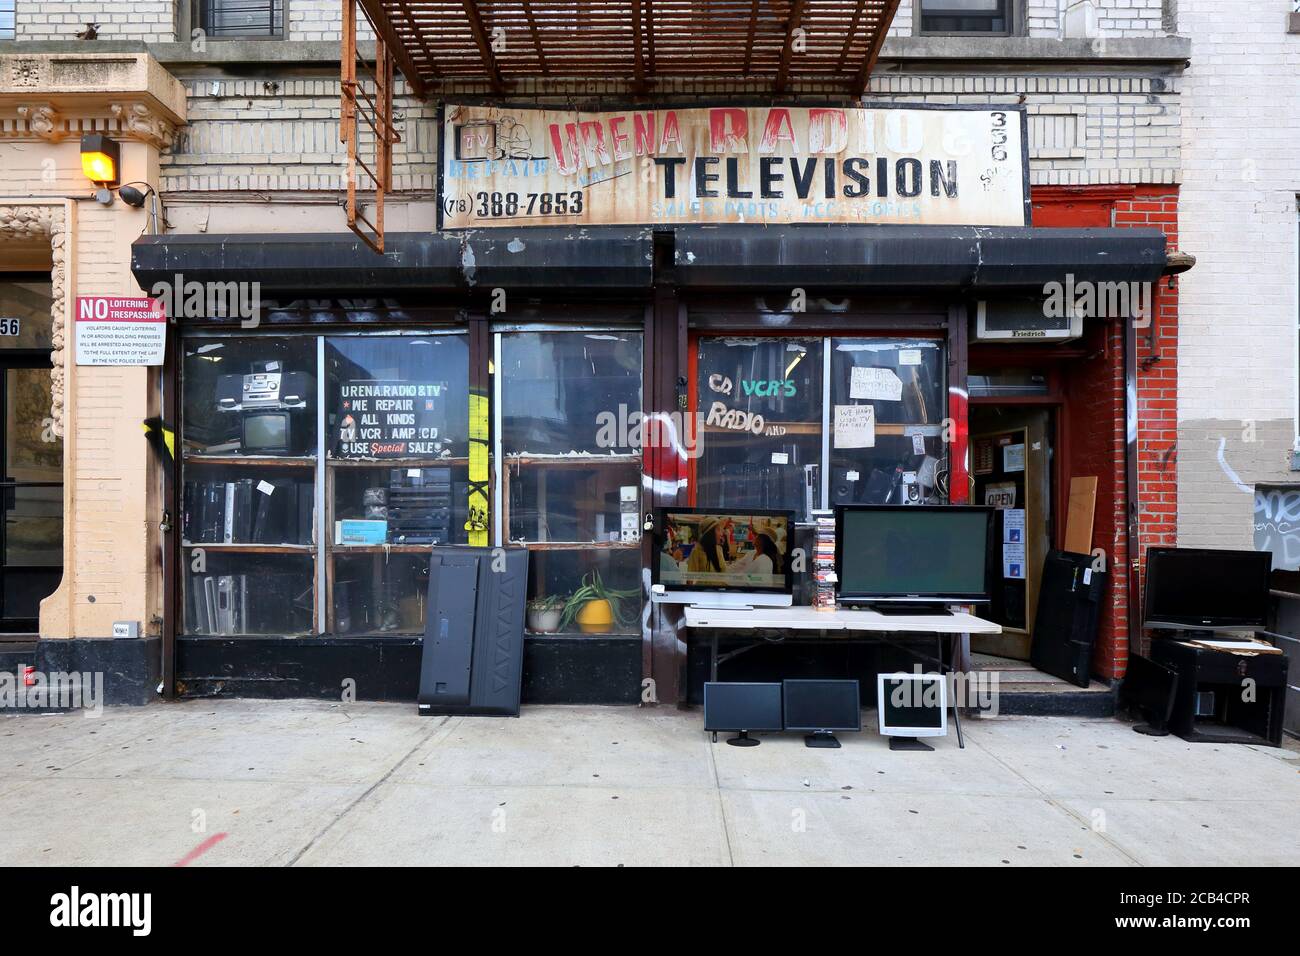 Urena radio & Television, 356 S 1st St, Brooklyn, New York. New York photo d'un magasin de réparation de télévision et de radio dans le quartier de Williamsburg. Banque D'Images